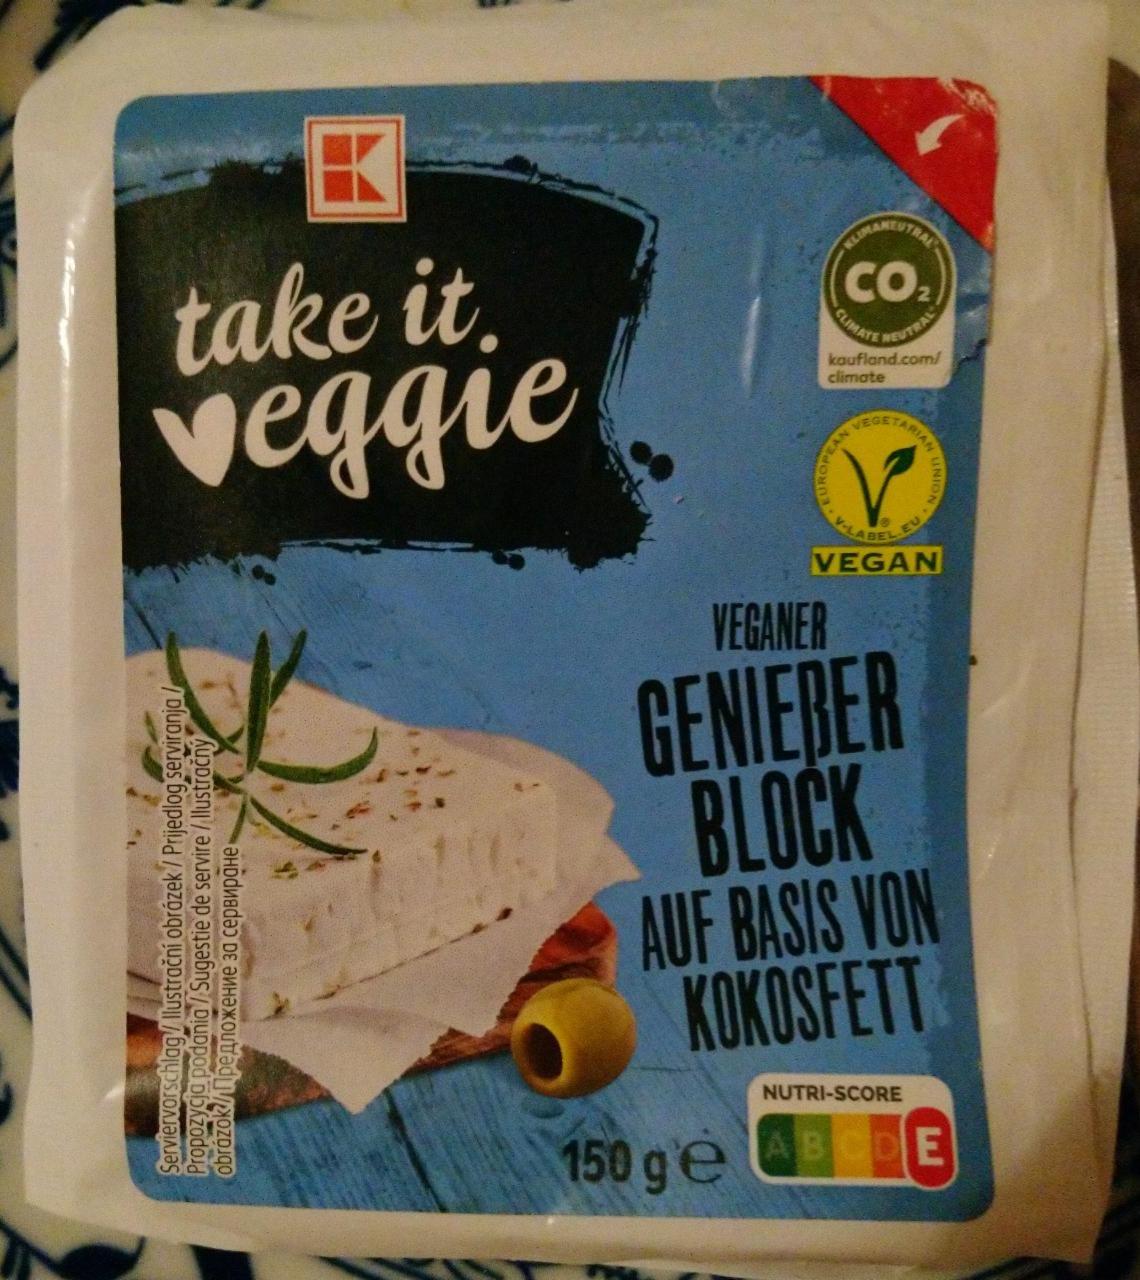 Fotografie - Veganer Genießer Block auf basis von kokosfett K-take it veggie